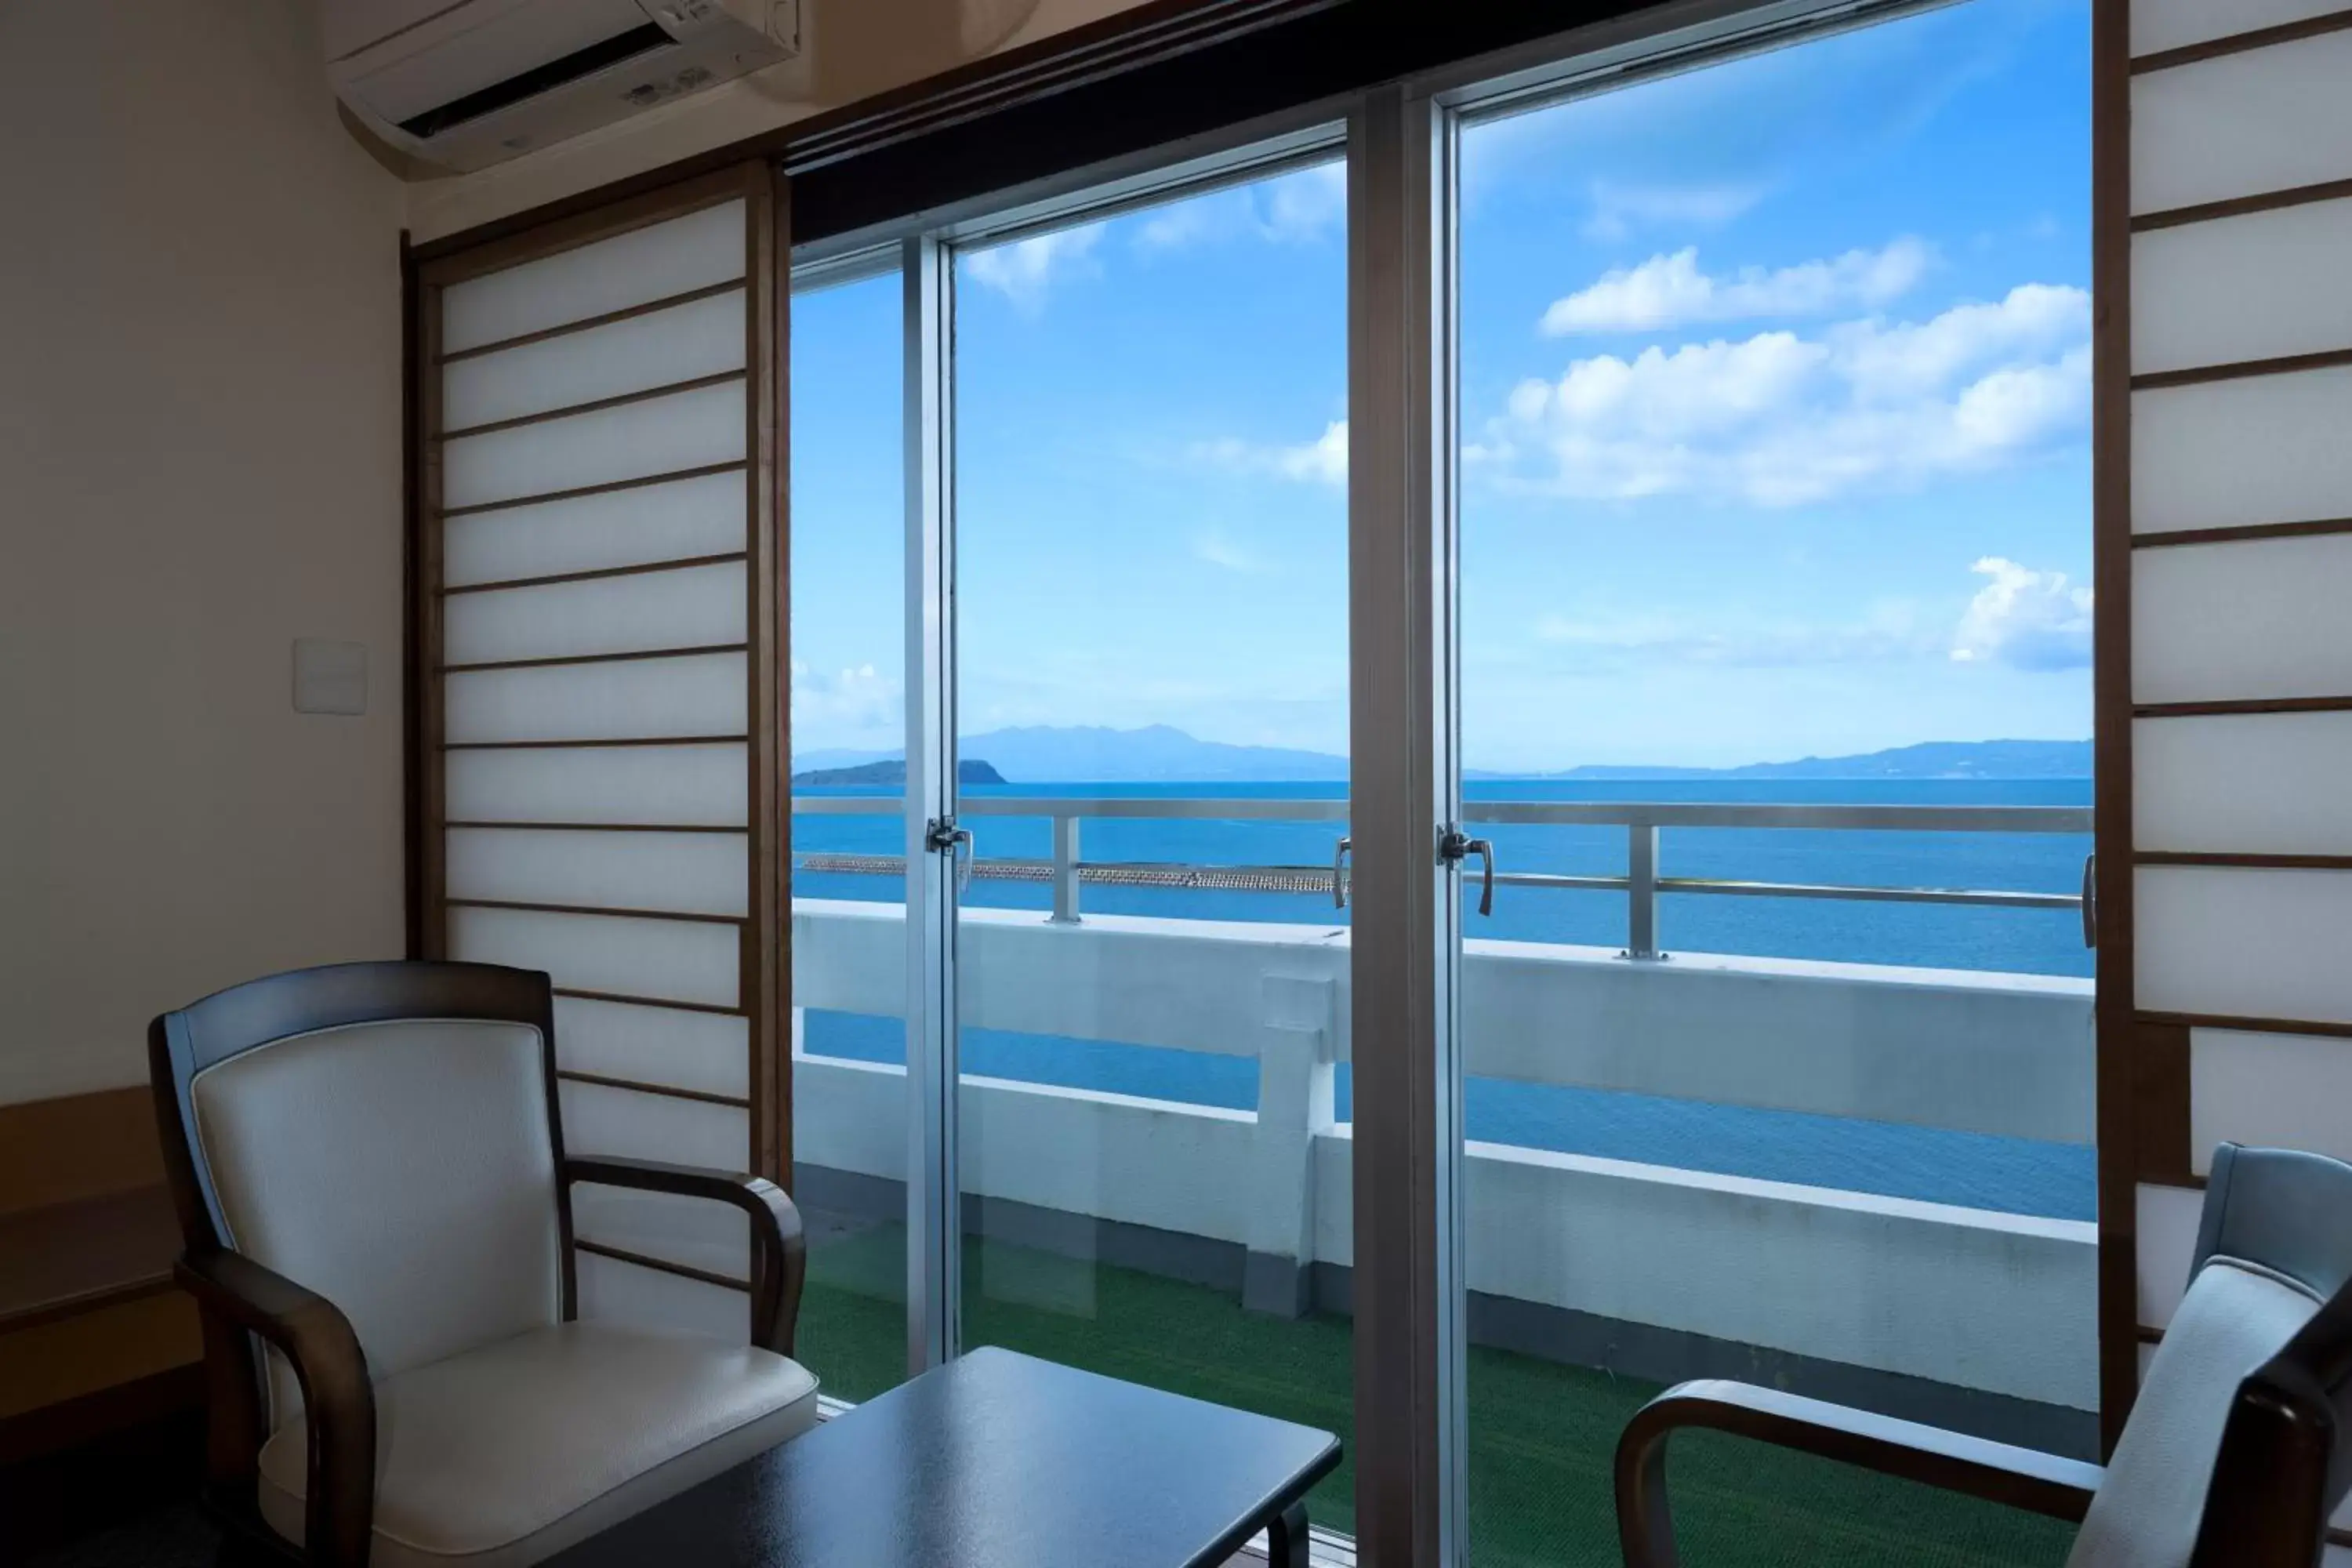 Sea view in Ibusuki Kaijo Hotel